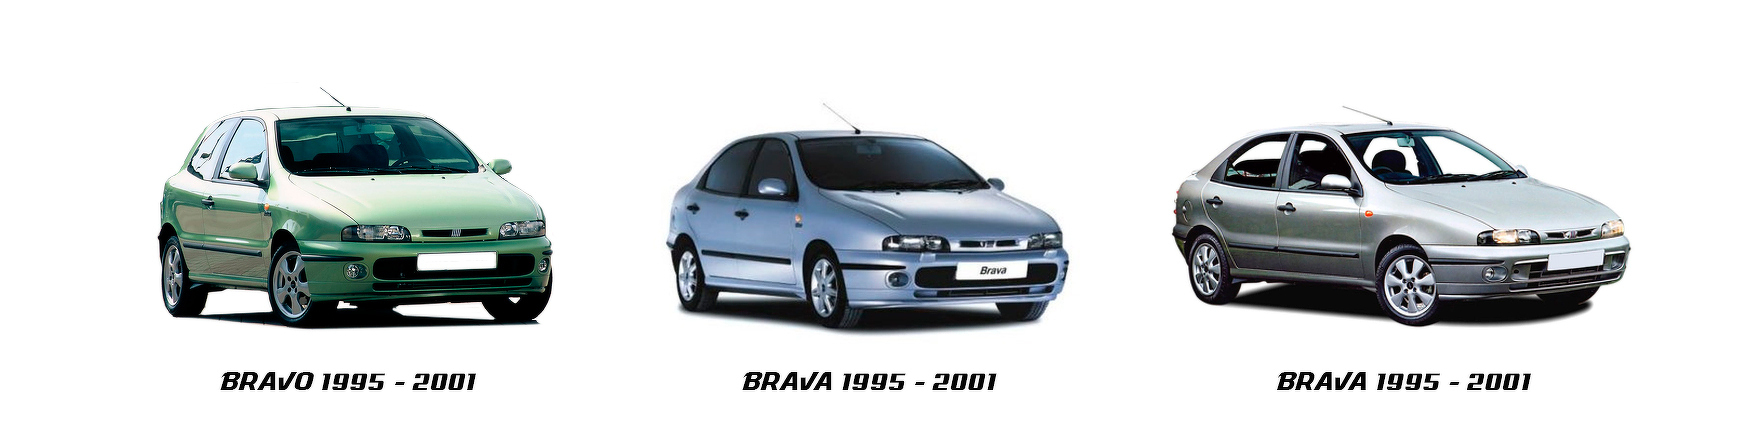 Piezas y Recambios De Fiat Bravo | Brava (182) De 1995 a 2001 | Veramauto.es